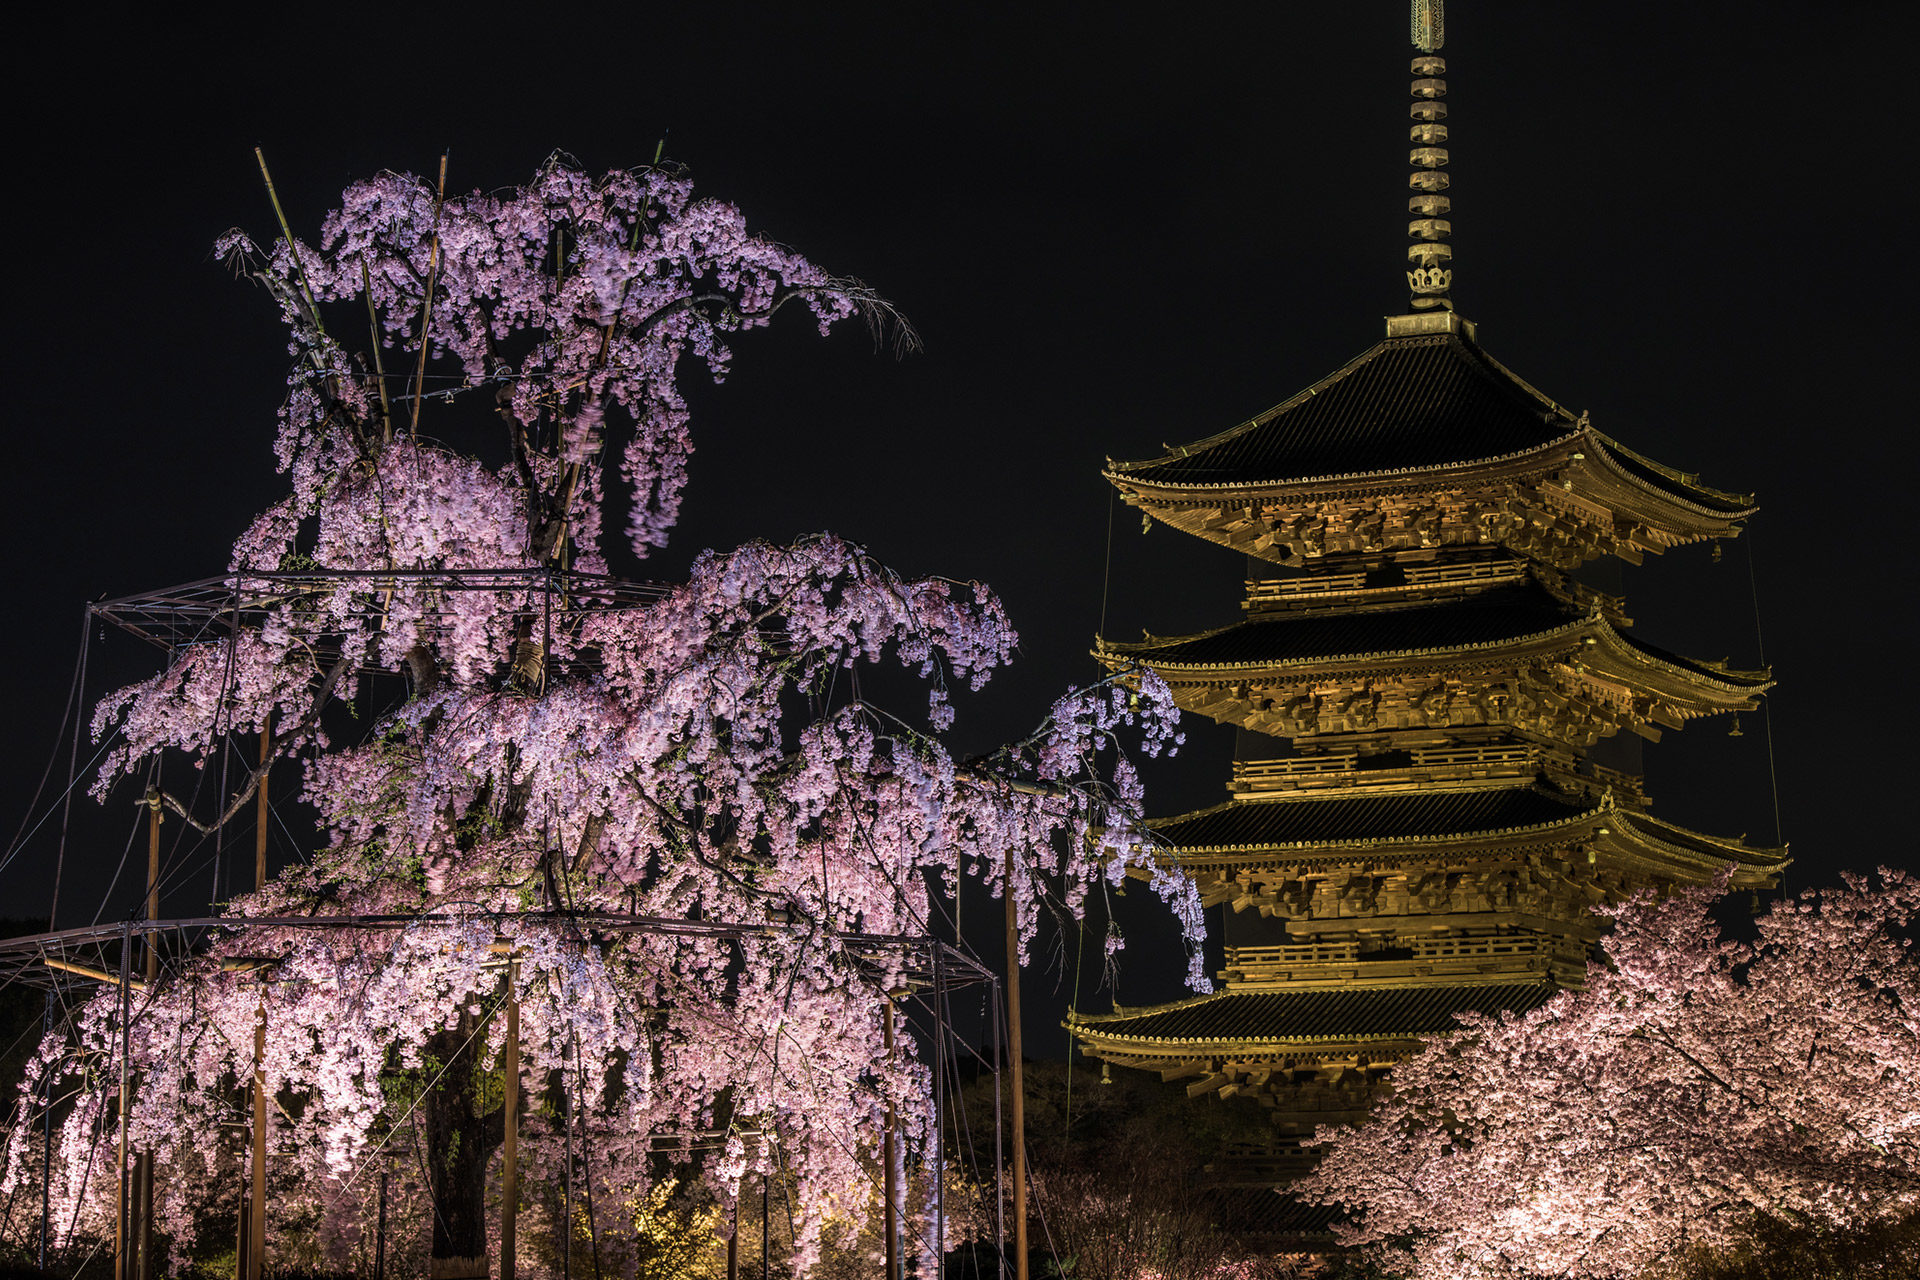 京都の桜をより美しくするライトアップ おすすめのスポットは Caedekyoto カエデ京都 紅葉と伝統美を引き継ぐバッグ